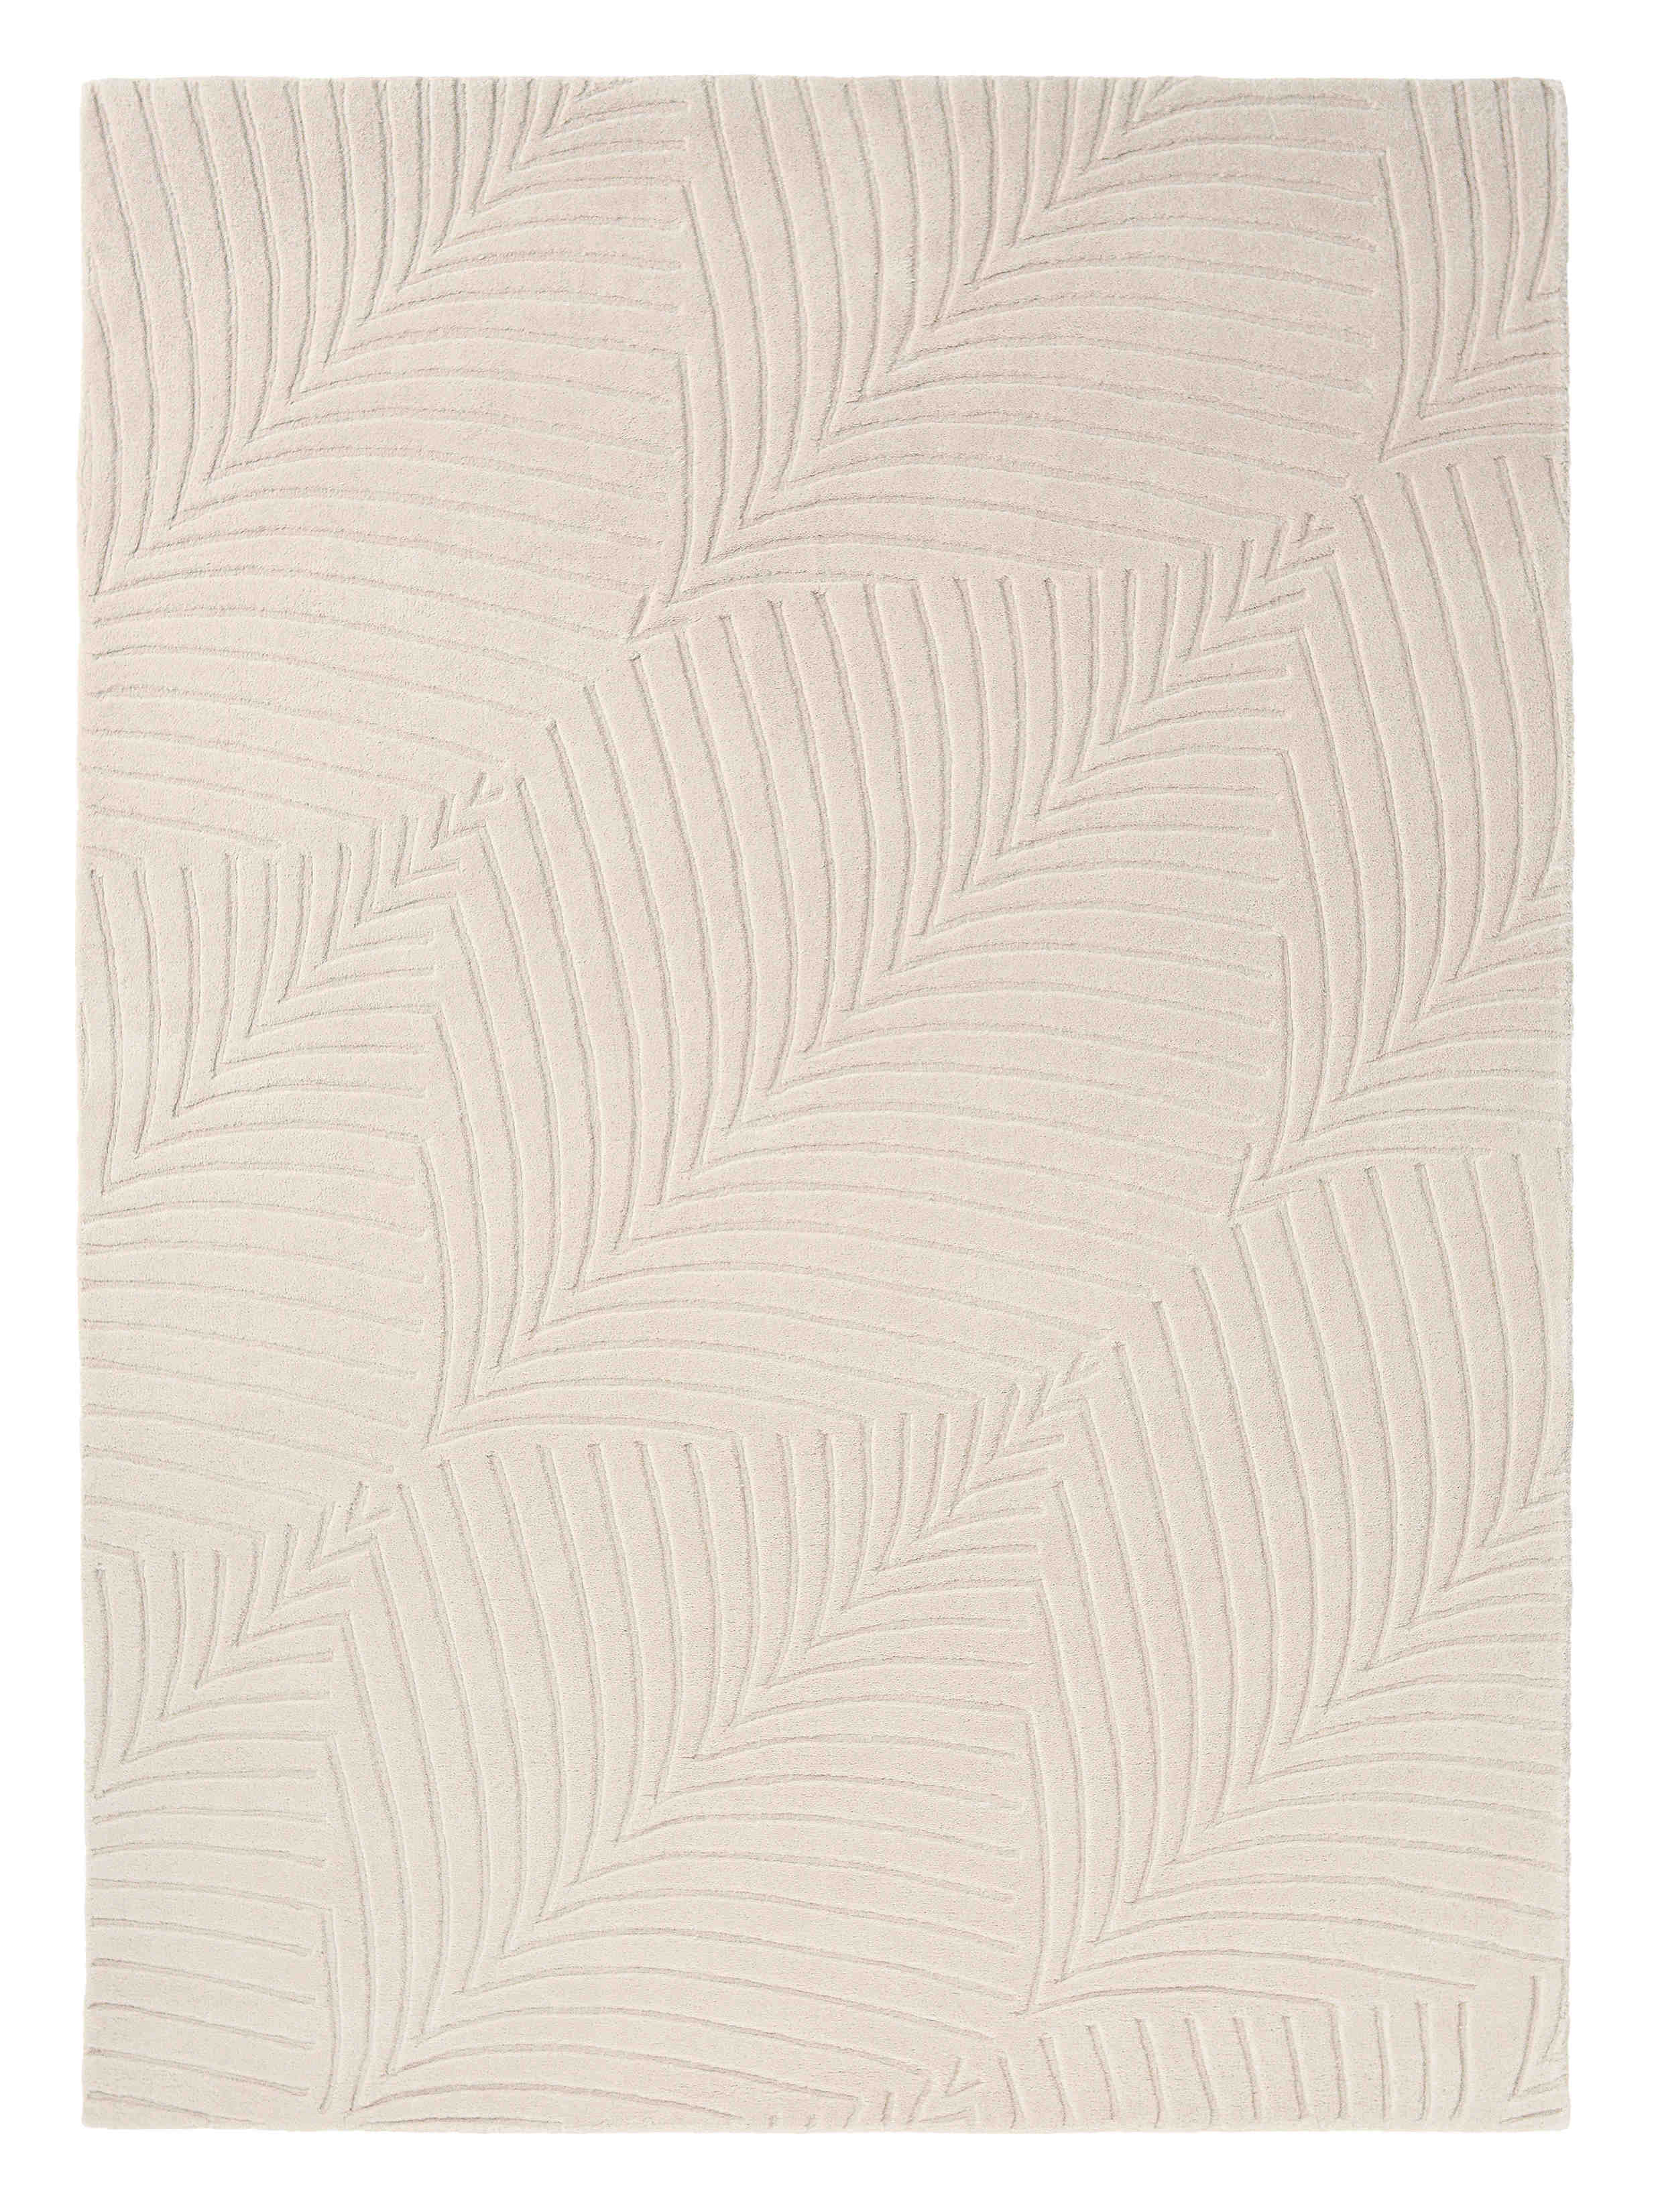 Rectangular beige rug with engraved leaf pattern